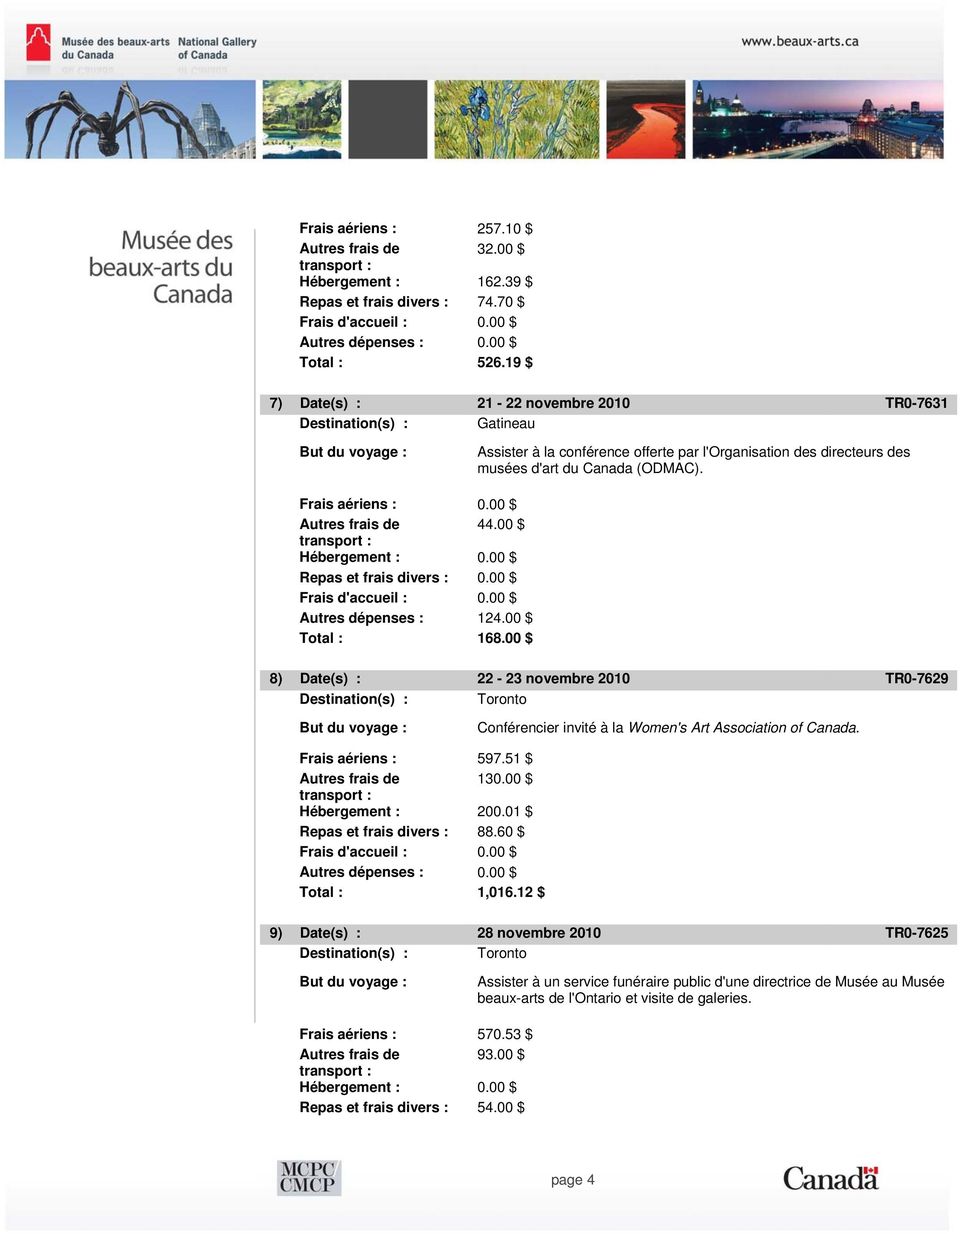 00 $ 44.00 $ Repas et frais divers : 0.00 $ Autres dépenses : 124.00 $ Total : 168.00 $ 8) Date(s) : 22-23 novembre 2010 TR0-7629 Conférencier invité à la Women's Art Association of Canada.